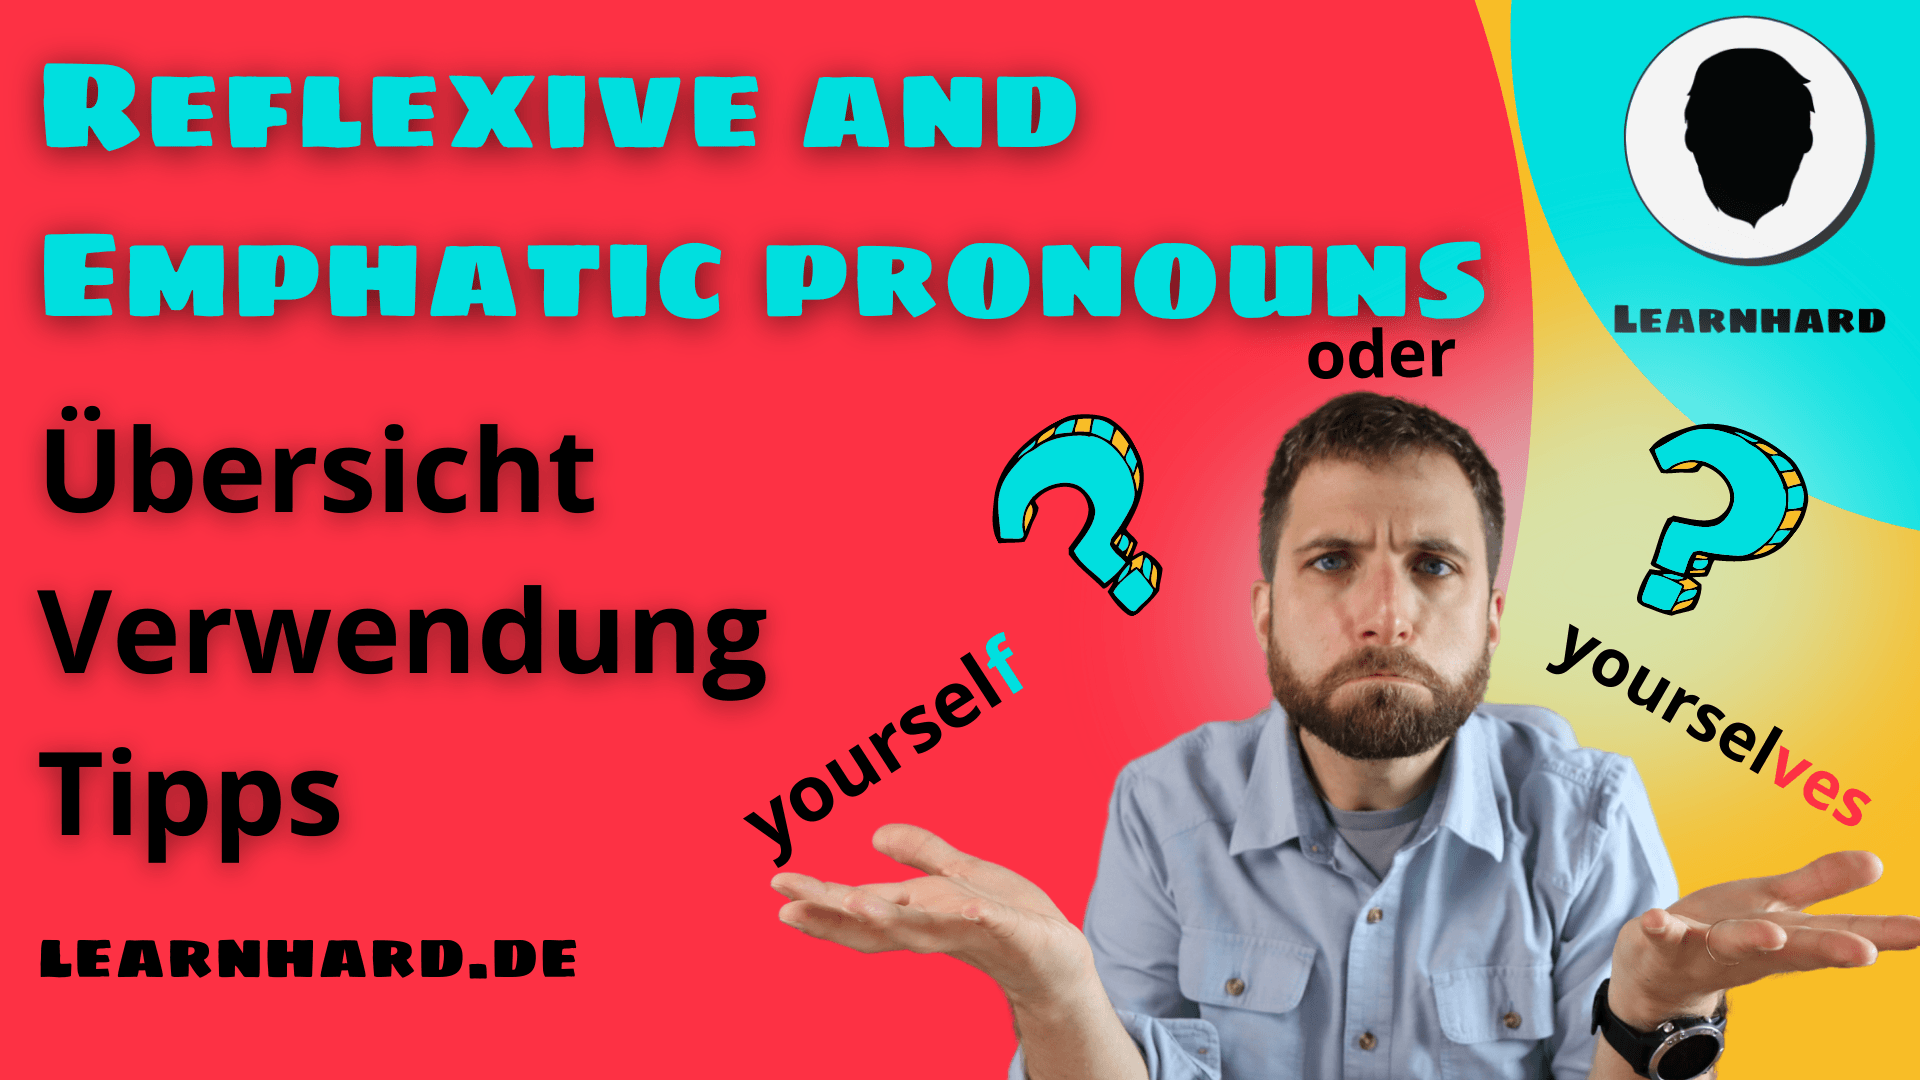 You are currently viewing Reflexive und emphatic pronouns einfach auf Deutsch erklärt